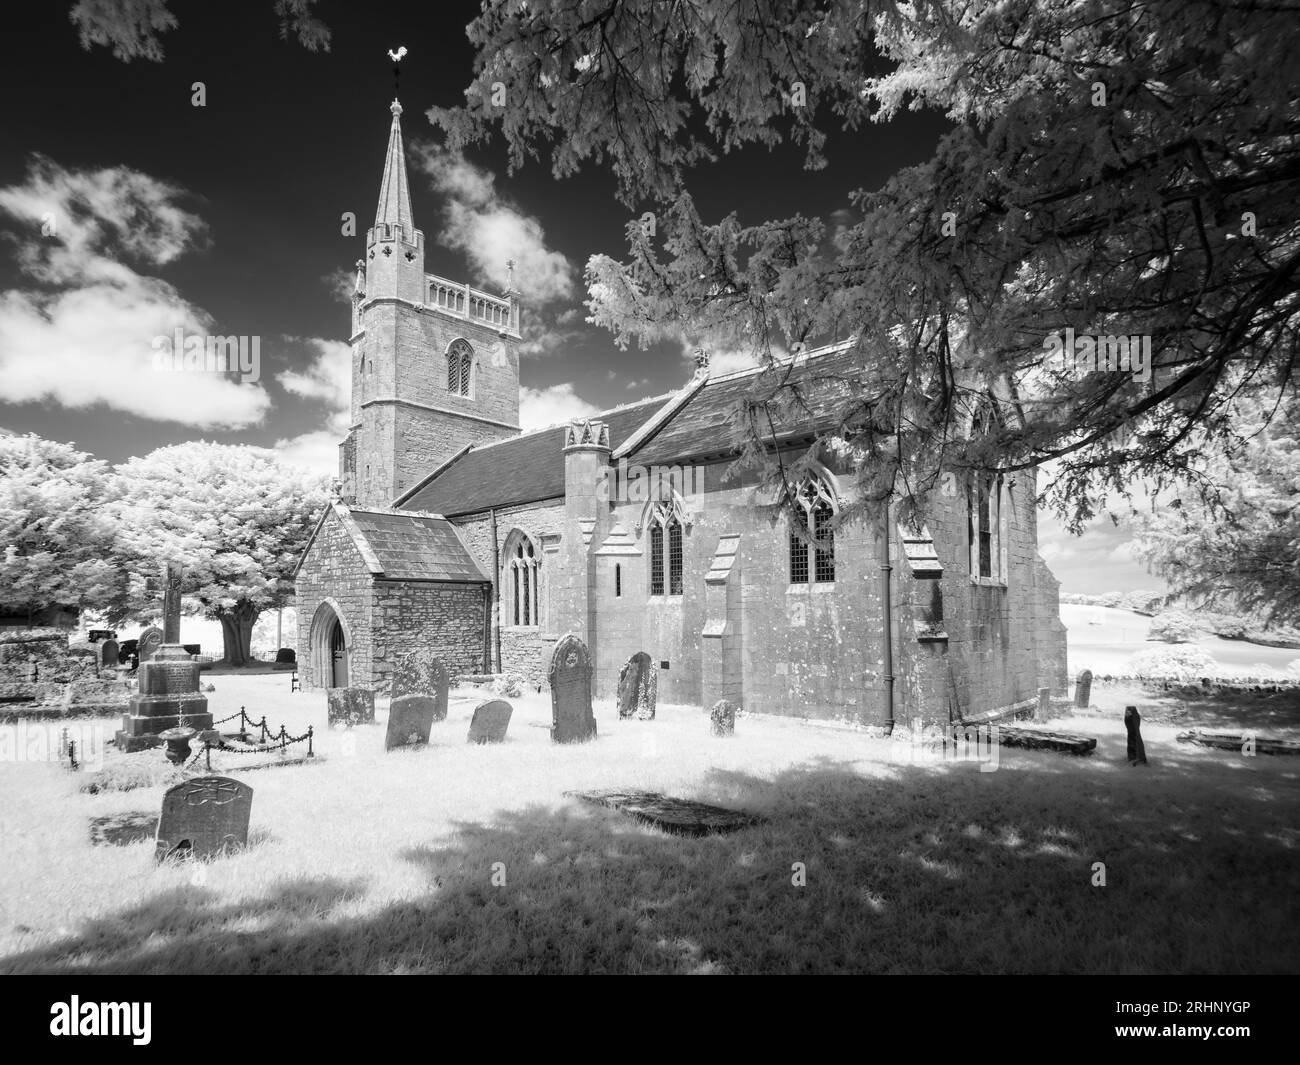 L'église St Mary dans le village de Nempnett Thrubwell, Somerset, Angleterre. Banque D'Images